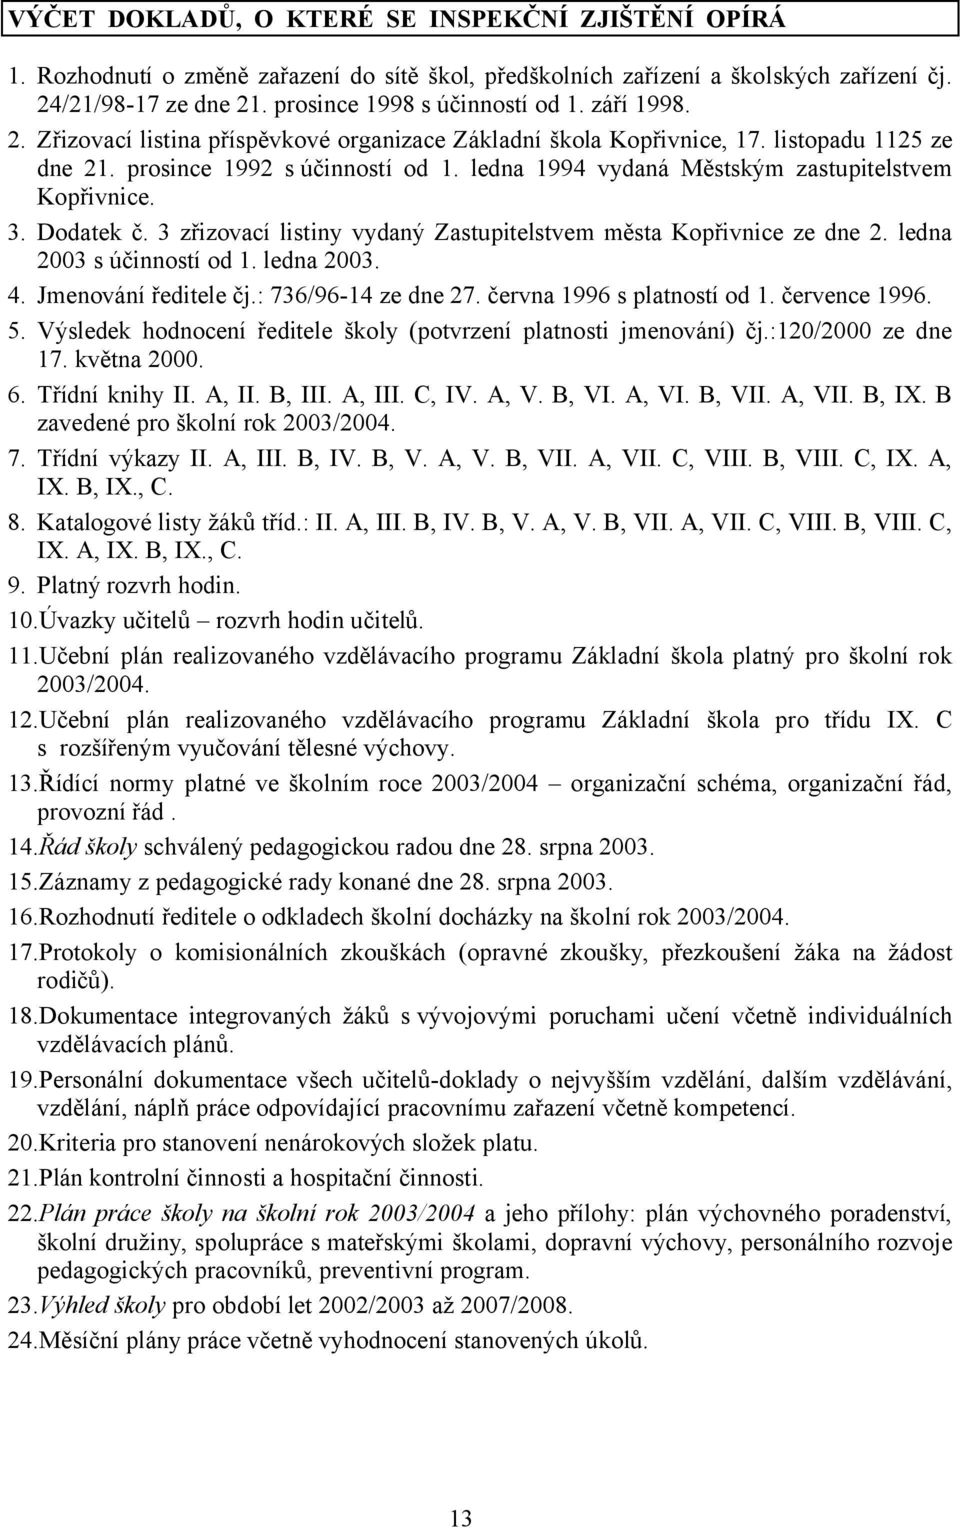 3. Dodatek č. 3 zřizovací listiny vydaný Zastupitelstvem města Kopřivnice ze dne 2. ledna 2003 s účinností od 1. ledna 2003. 4. Jmenování ředitele čj.: 736/96-14 ze dne 27.